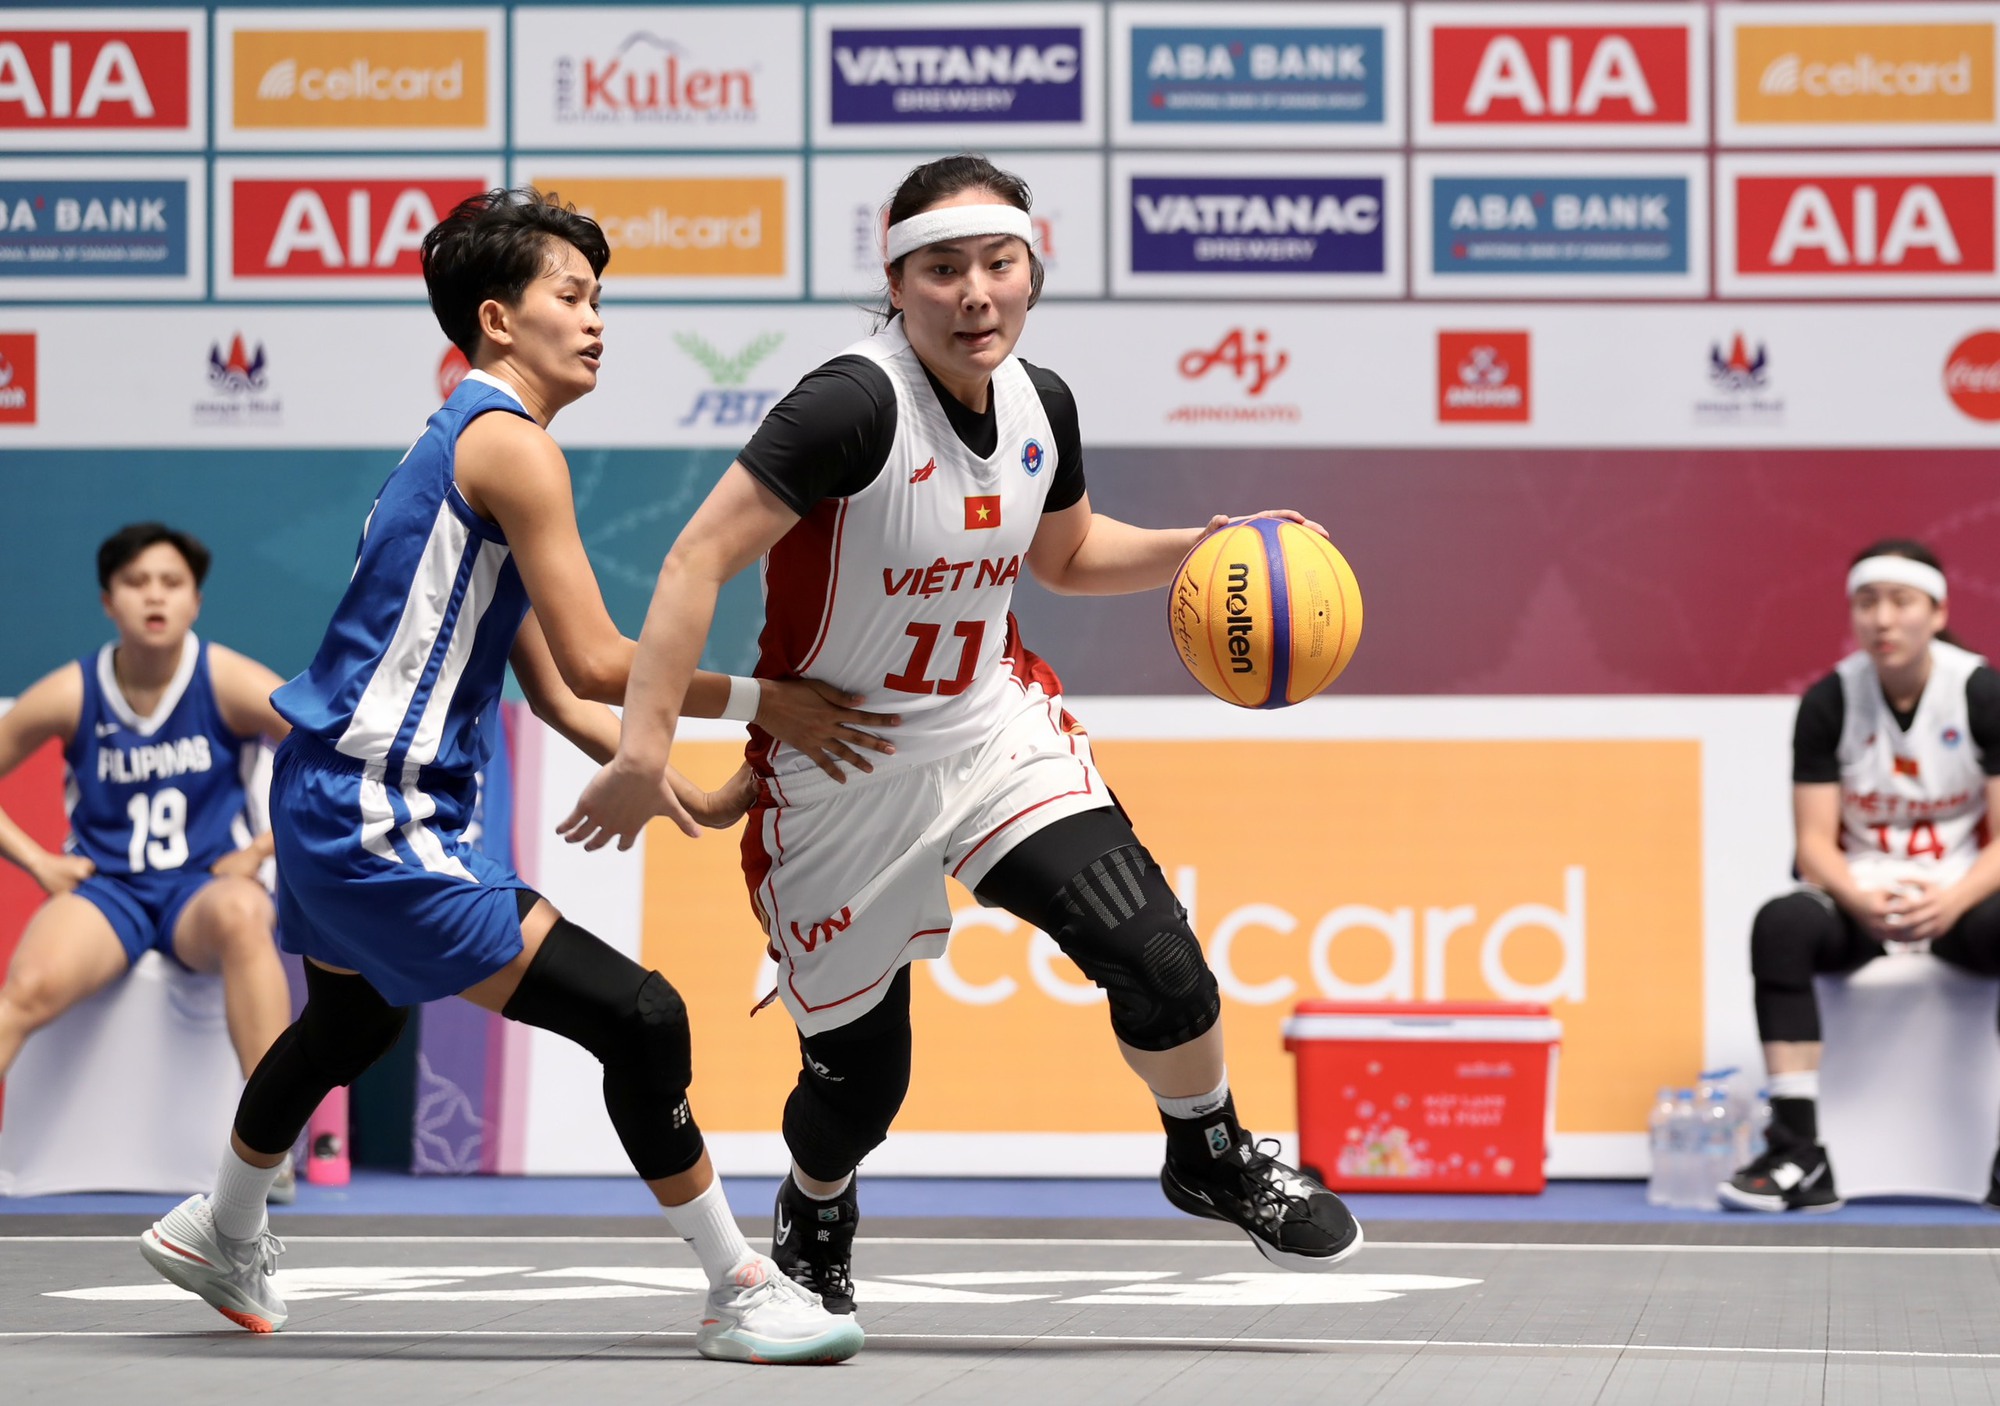 Cựu tuyển thủ hứa liều trước chiến tích bóng rổ nữ Việt Nam ở SEA Games 32 - Ảnh 1.